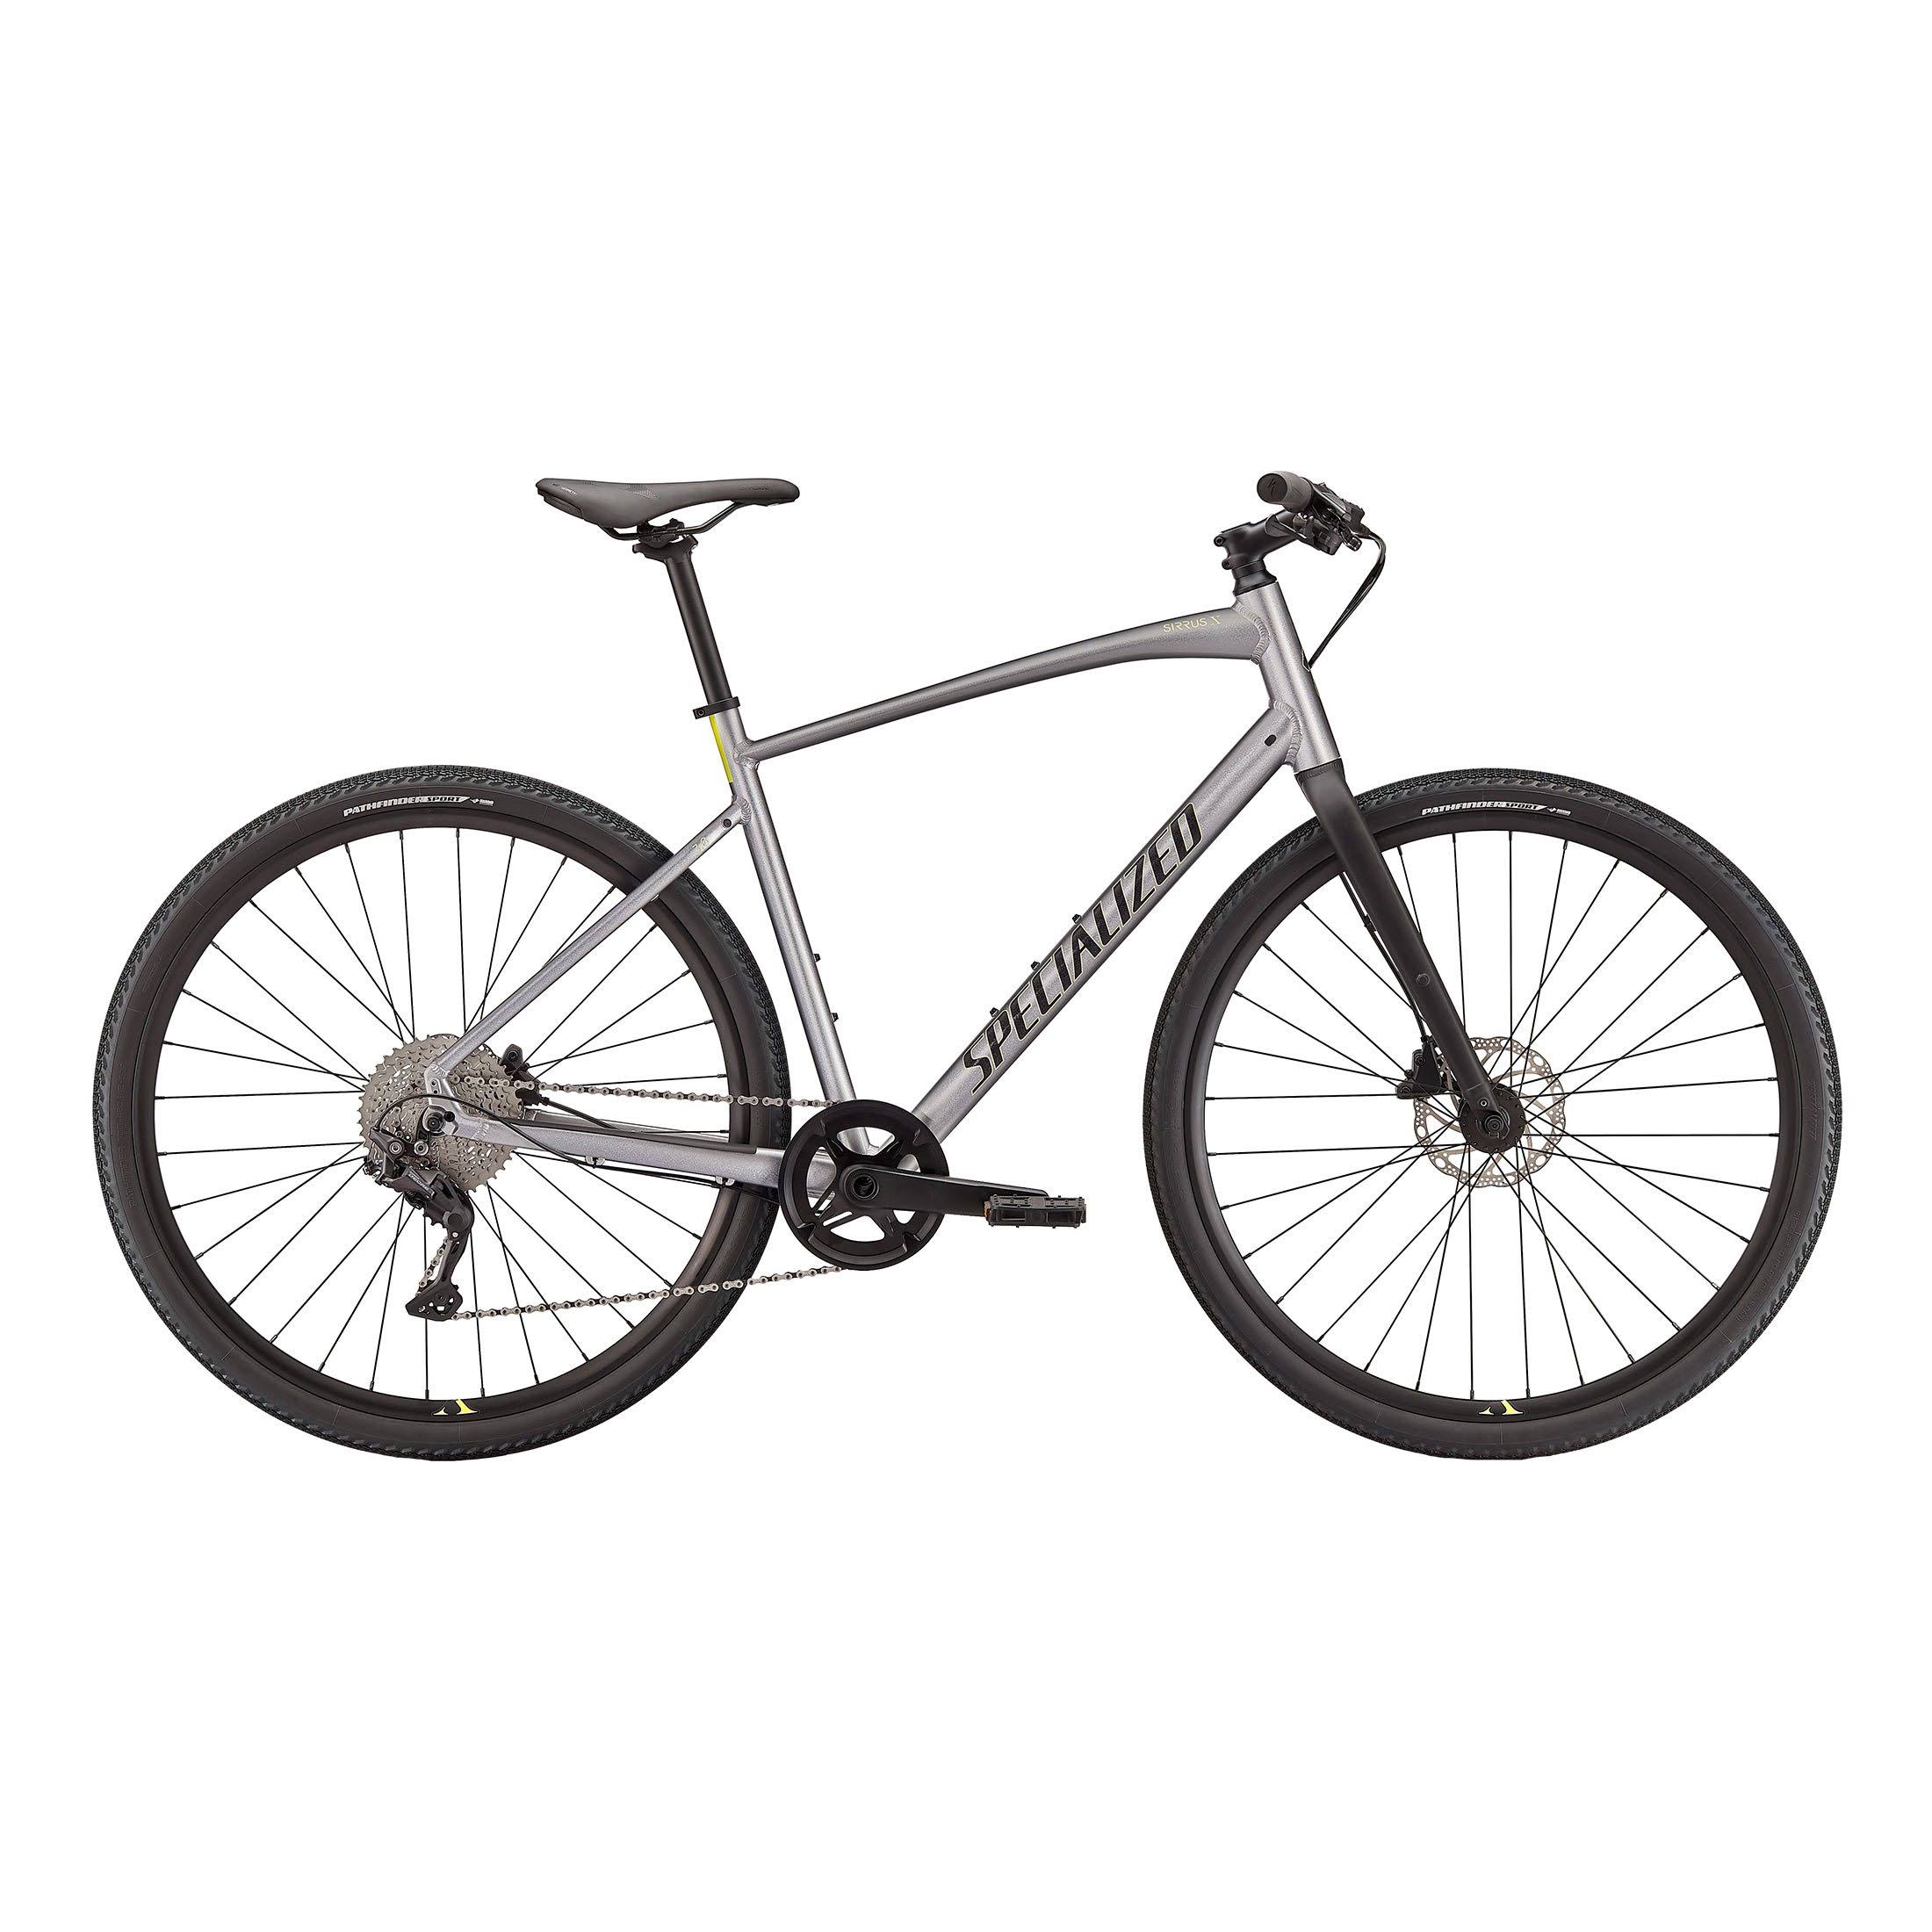 Specialized Sirrus x 3.0 2021 Hybrid Bike - Silver